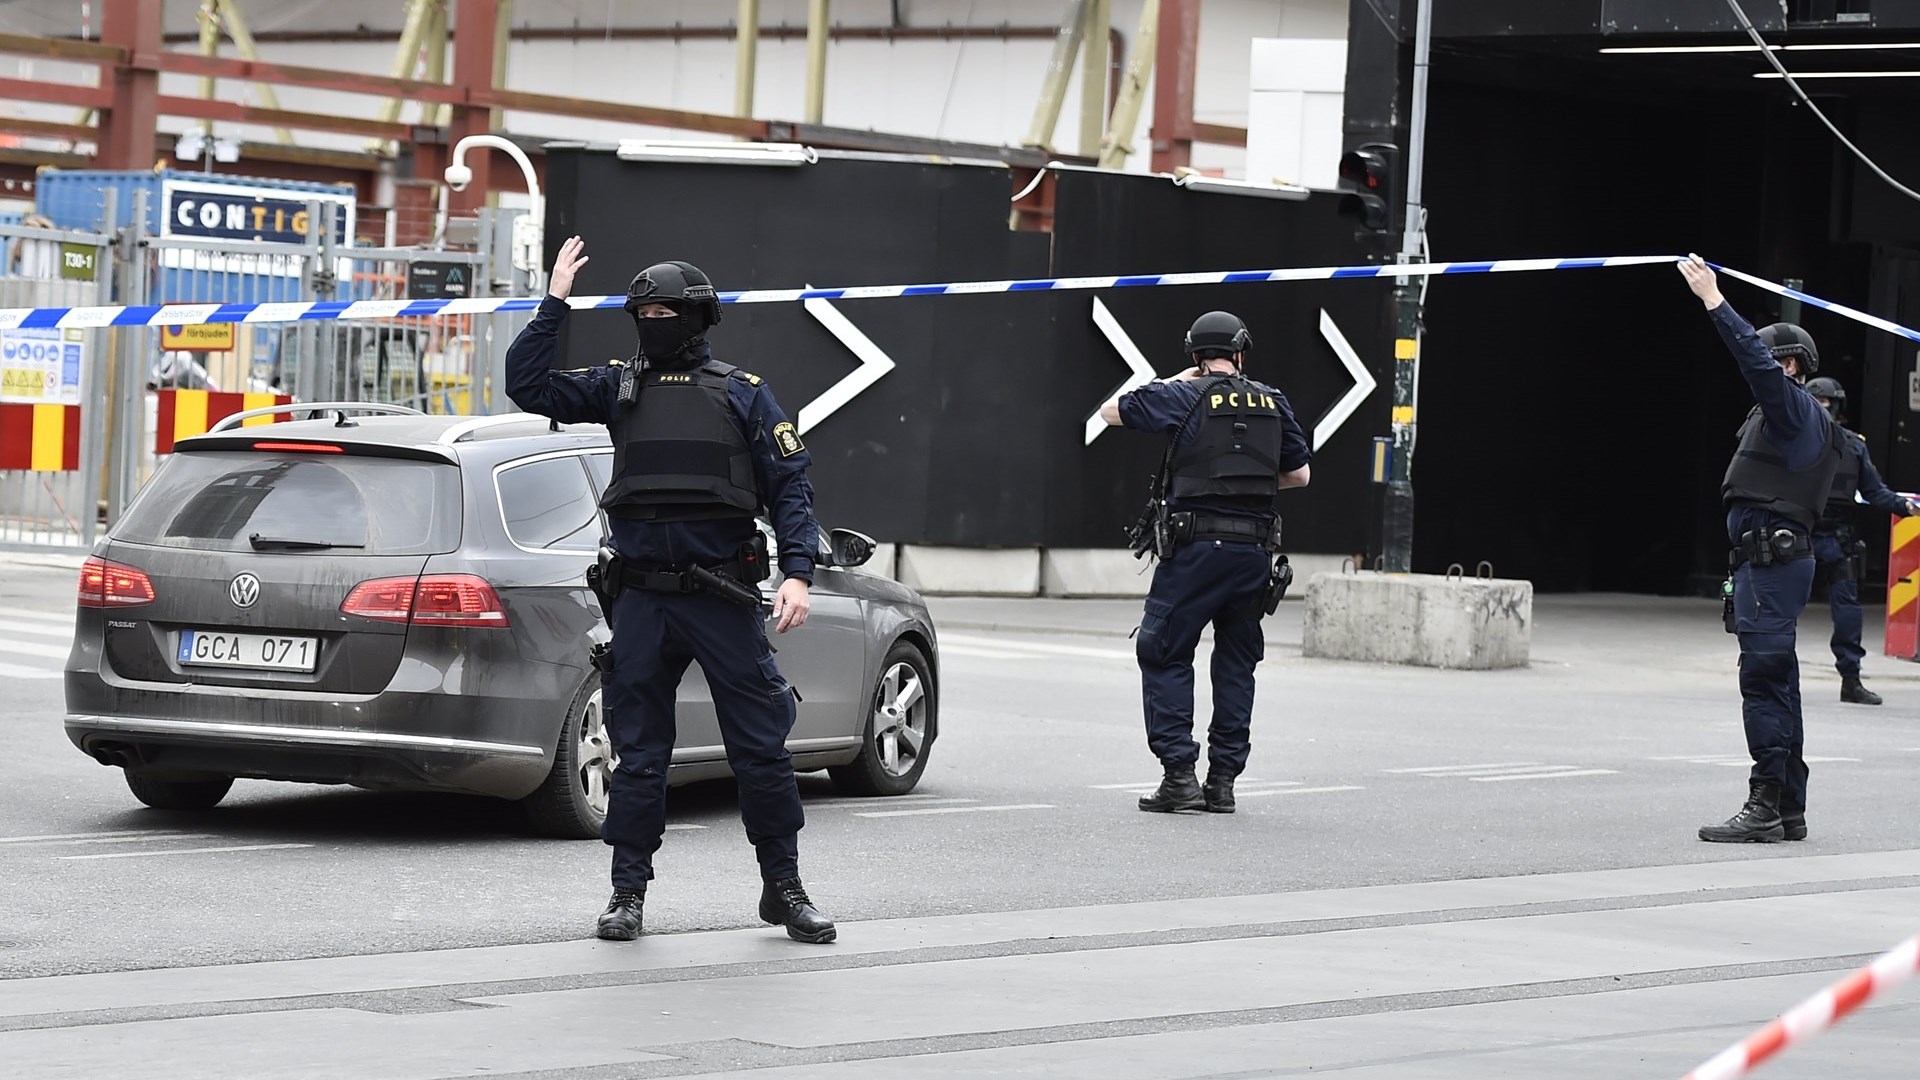 Η σουηδική αστυνομία ανακρίνει δύο πρόσωπα για την επίθεση στη Στοκχόλμη